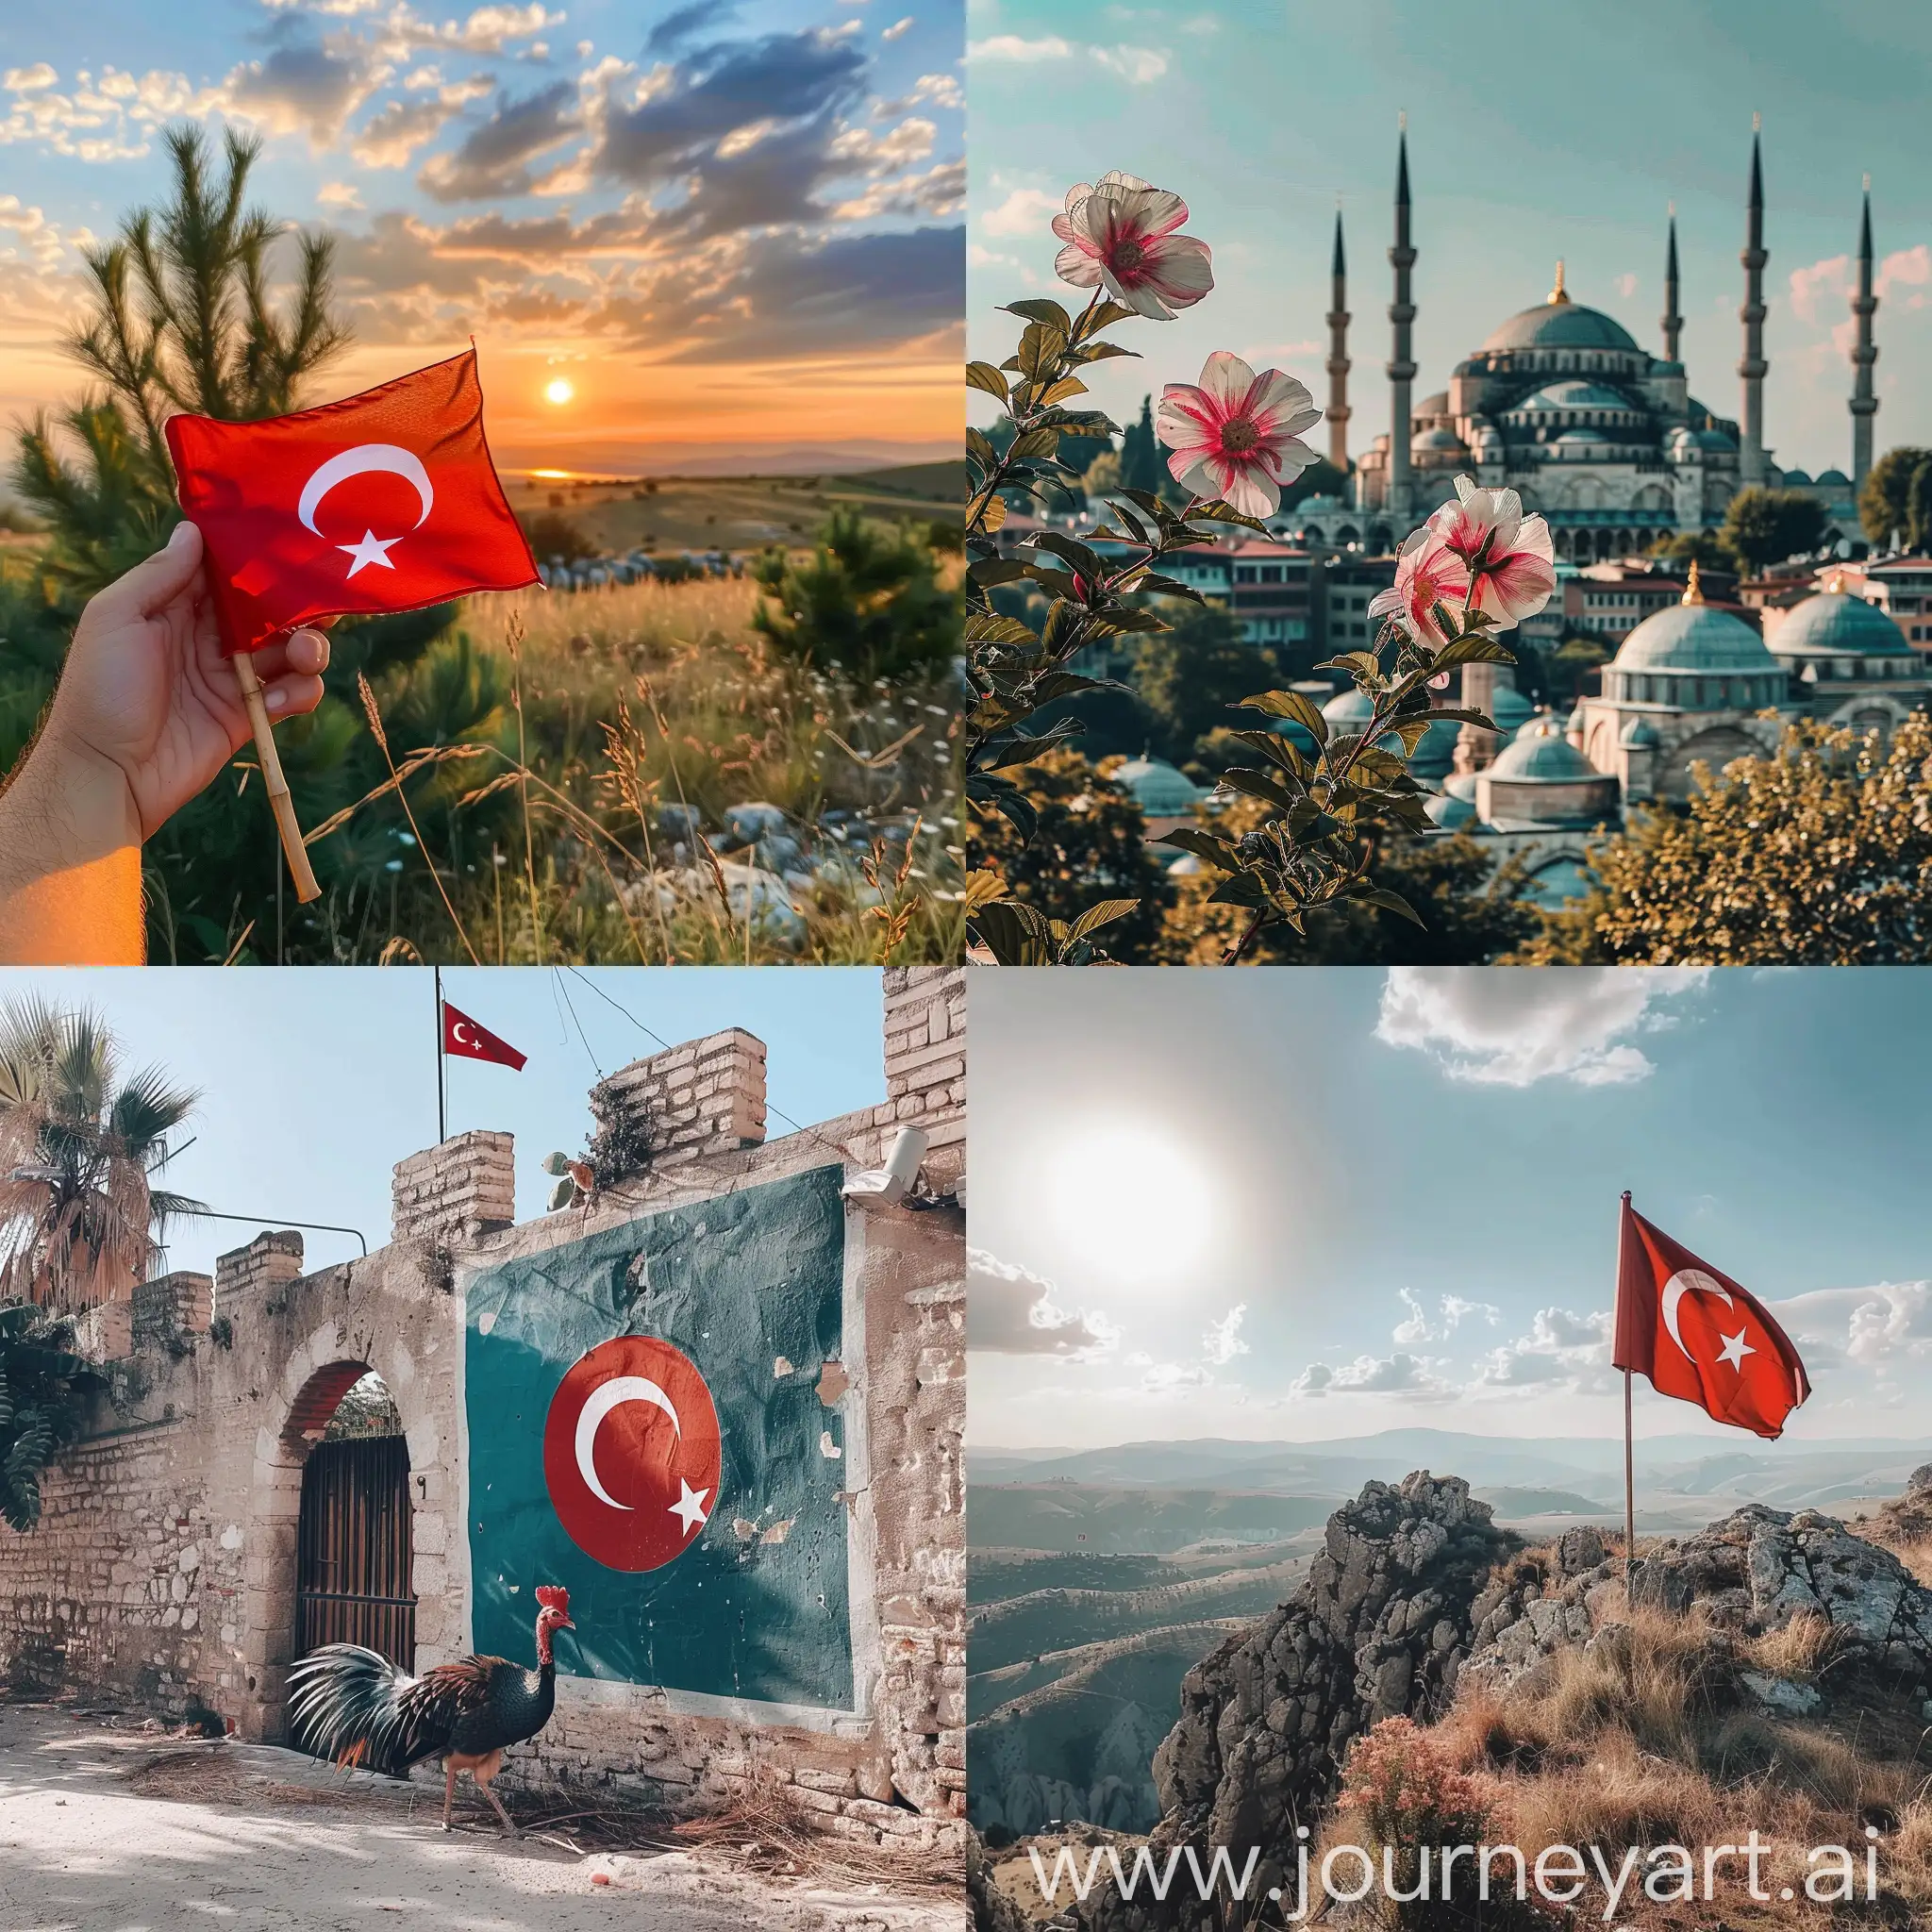 30 ağustos instagram postu hazırla türkiye